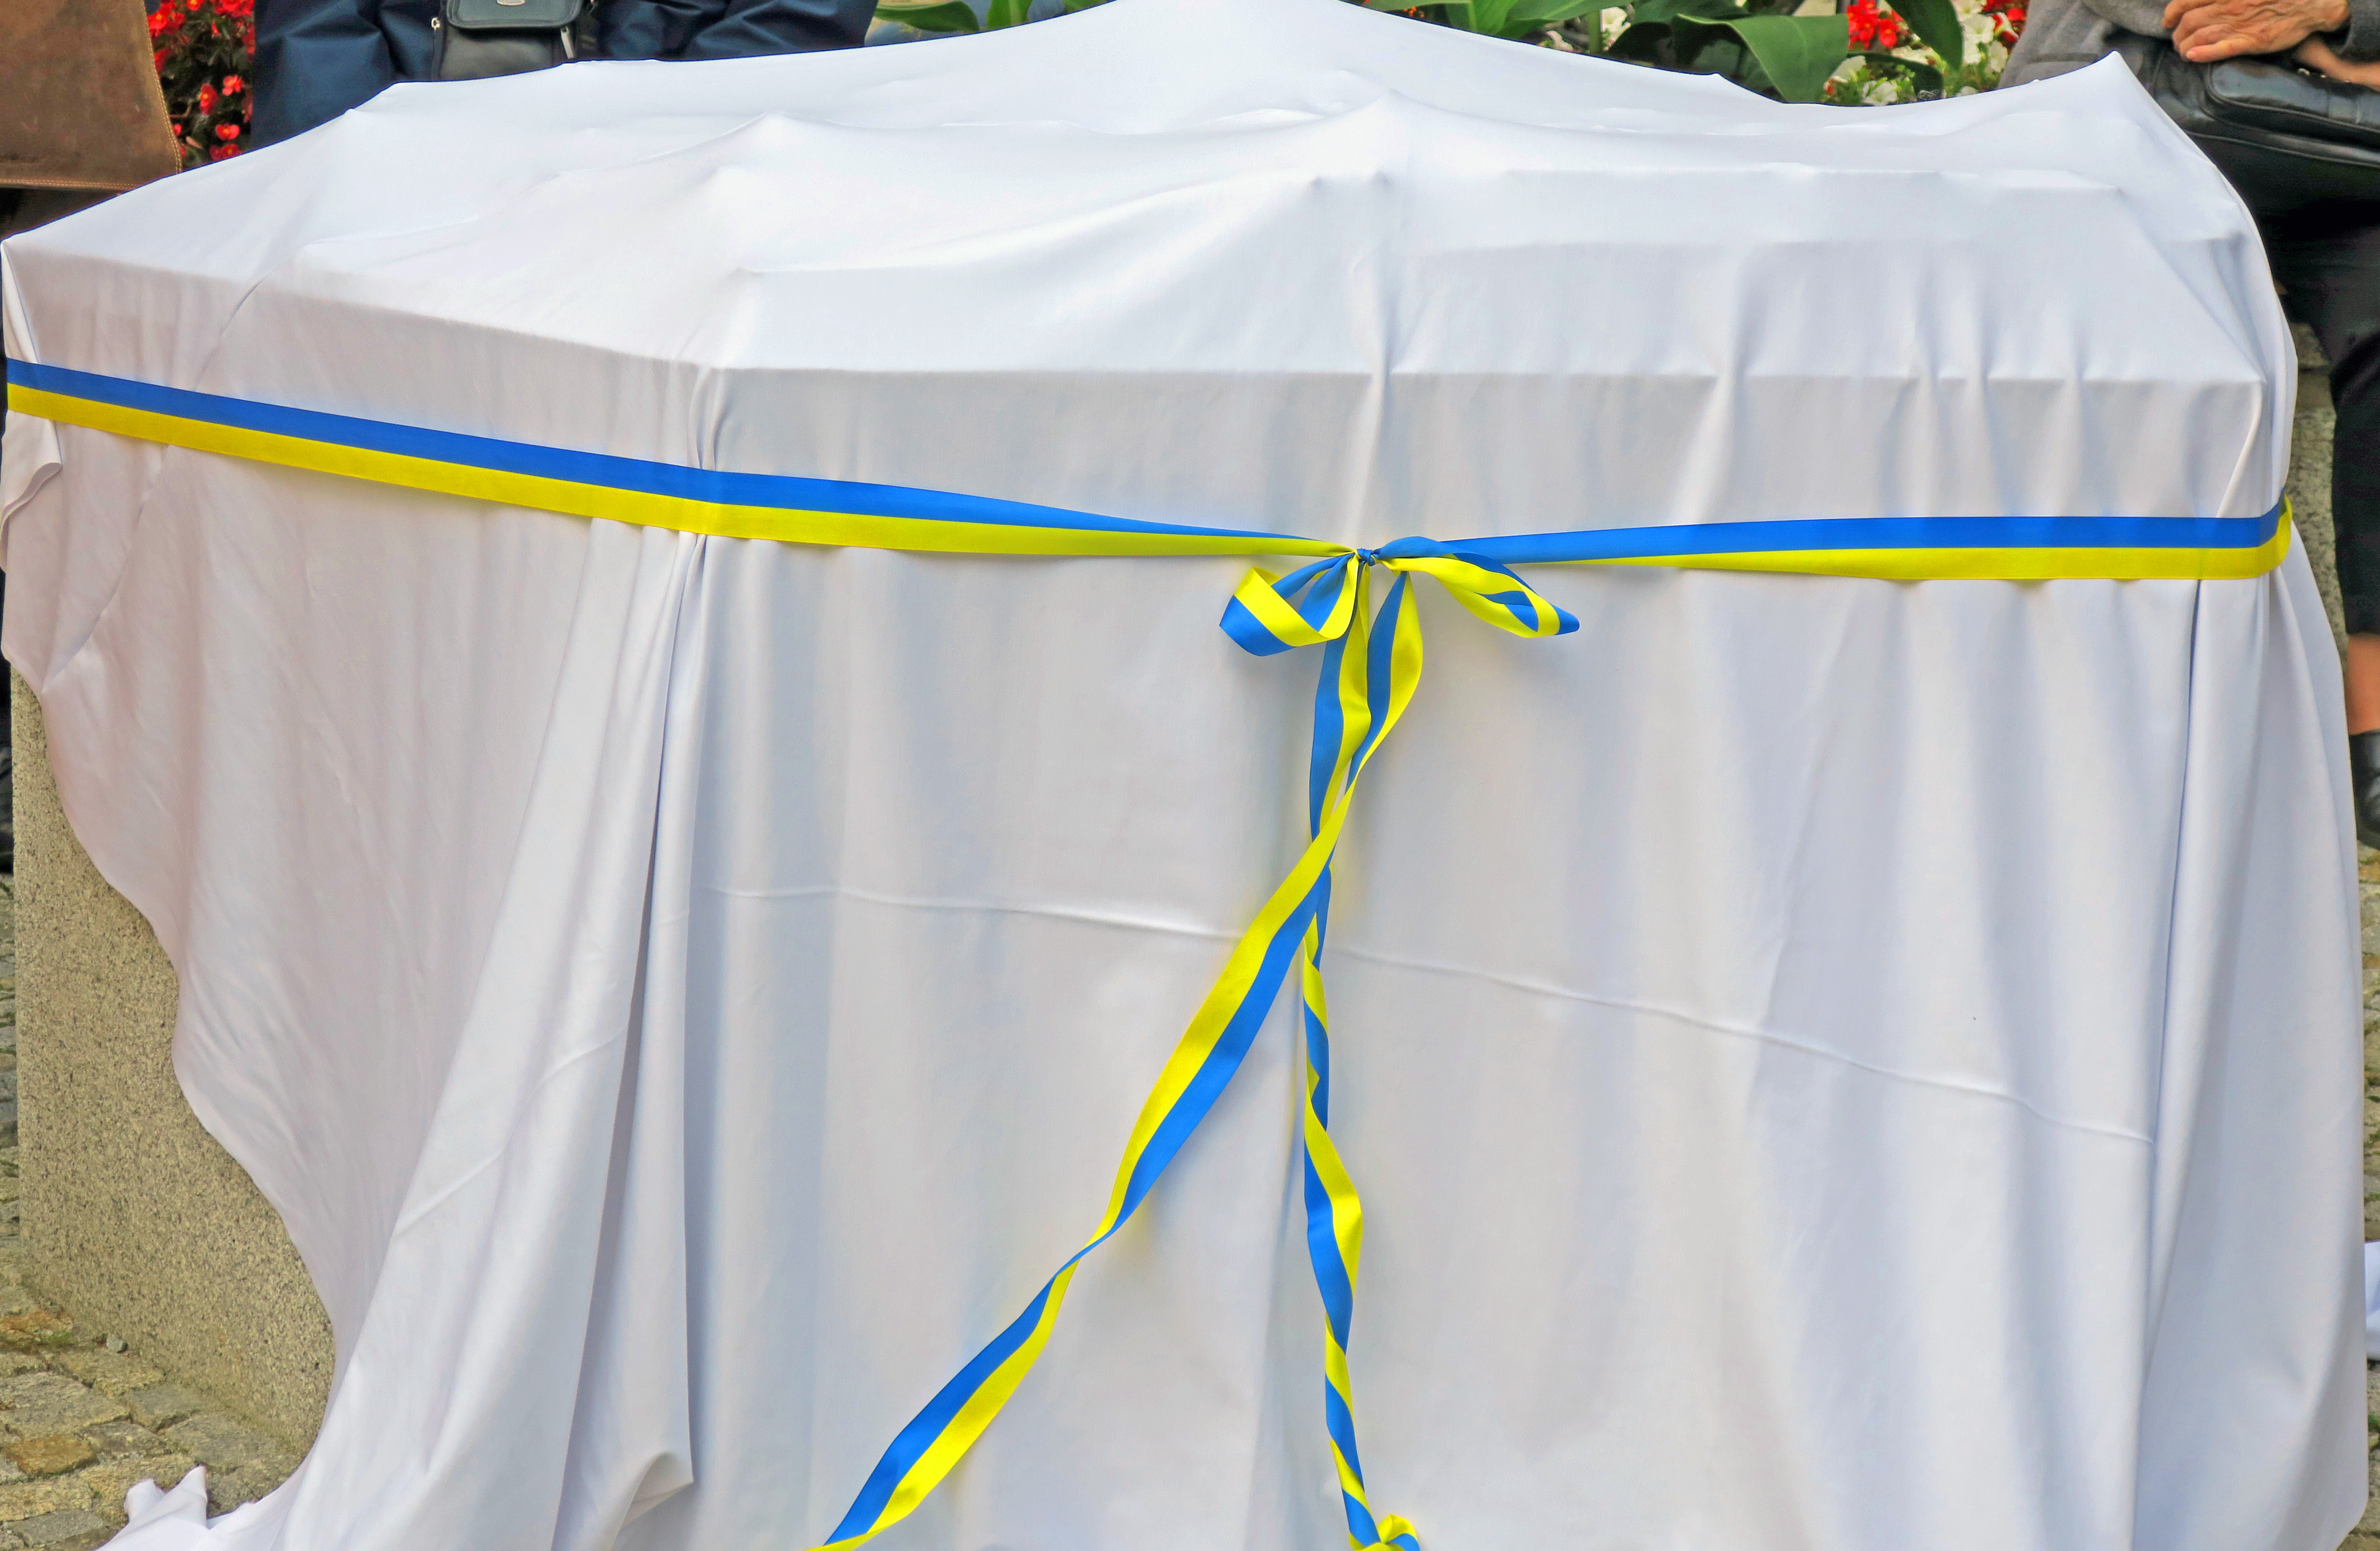 Das Altstadttastmodell ist mit einem weißen Laken abgedeckt und ein blau-gelbes Schleifenband ziert die Abdeckung.